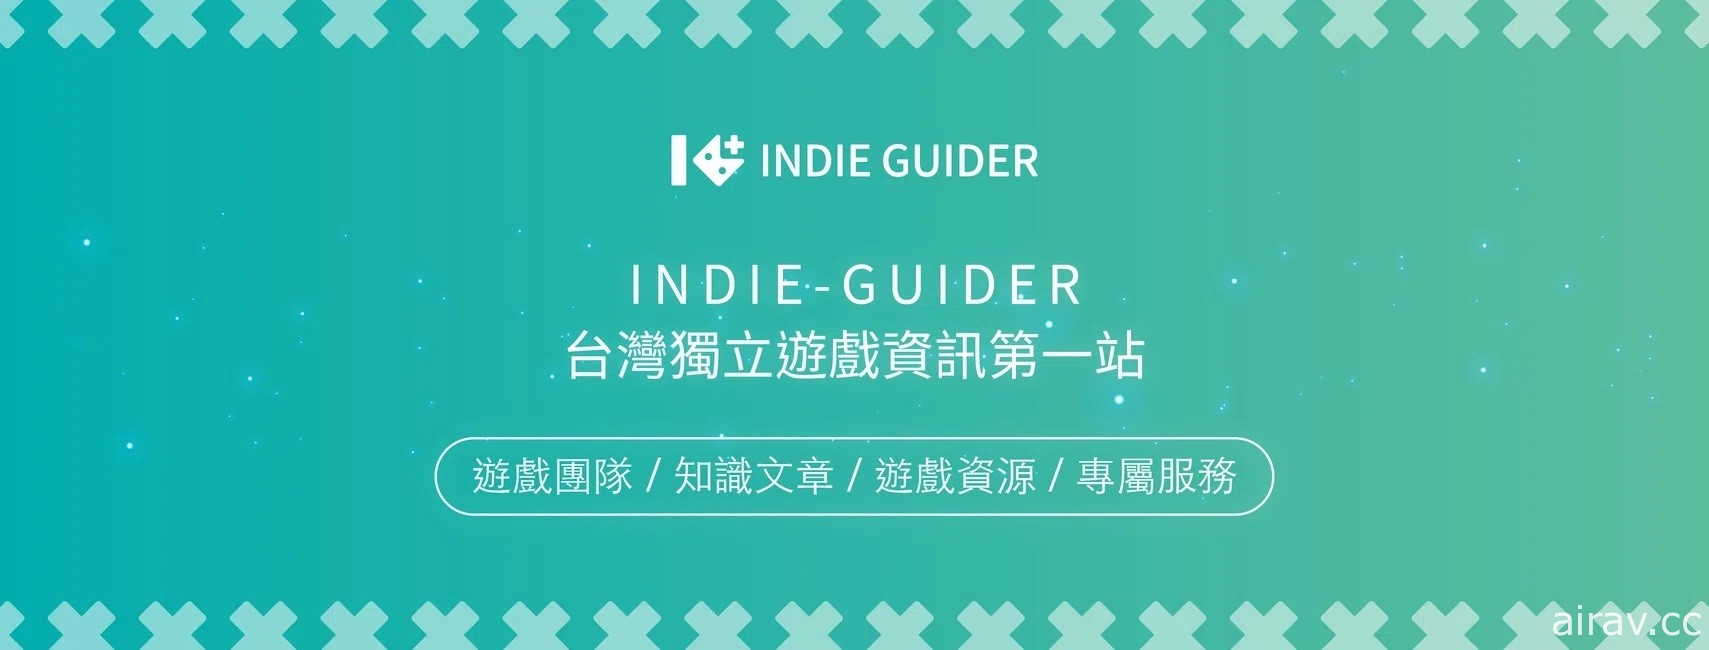 獨立遊戲生態圈聯盟官方網站「indie-guider」正式上線 期望完善生態圈